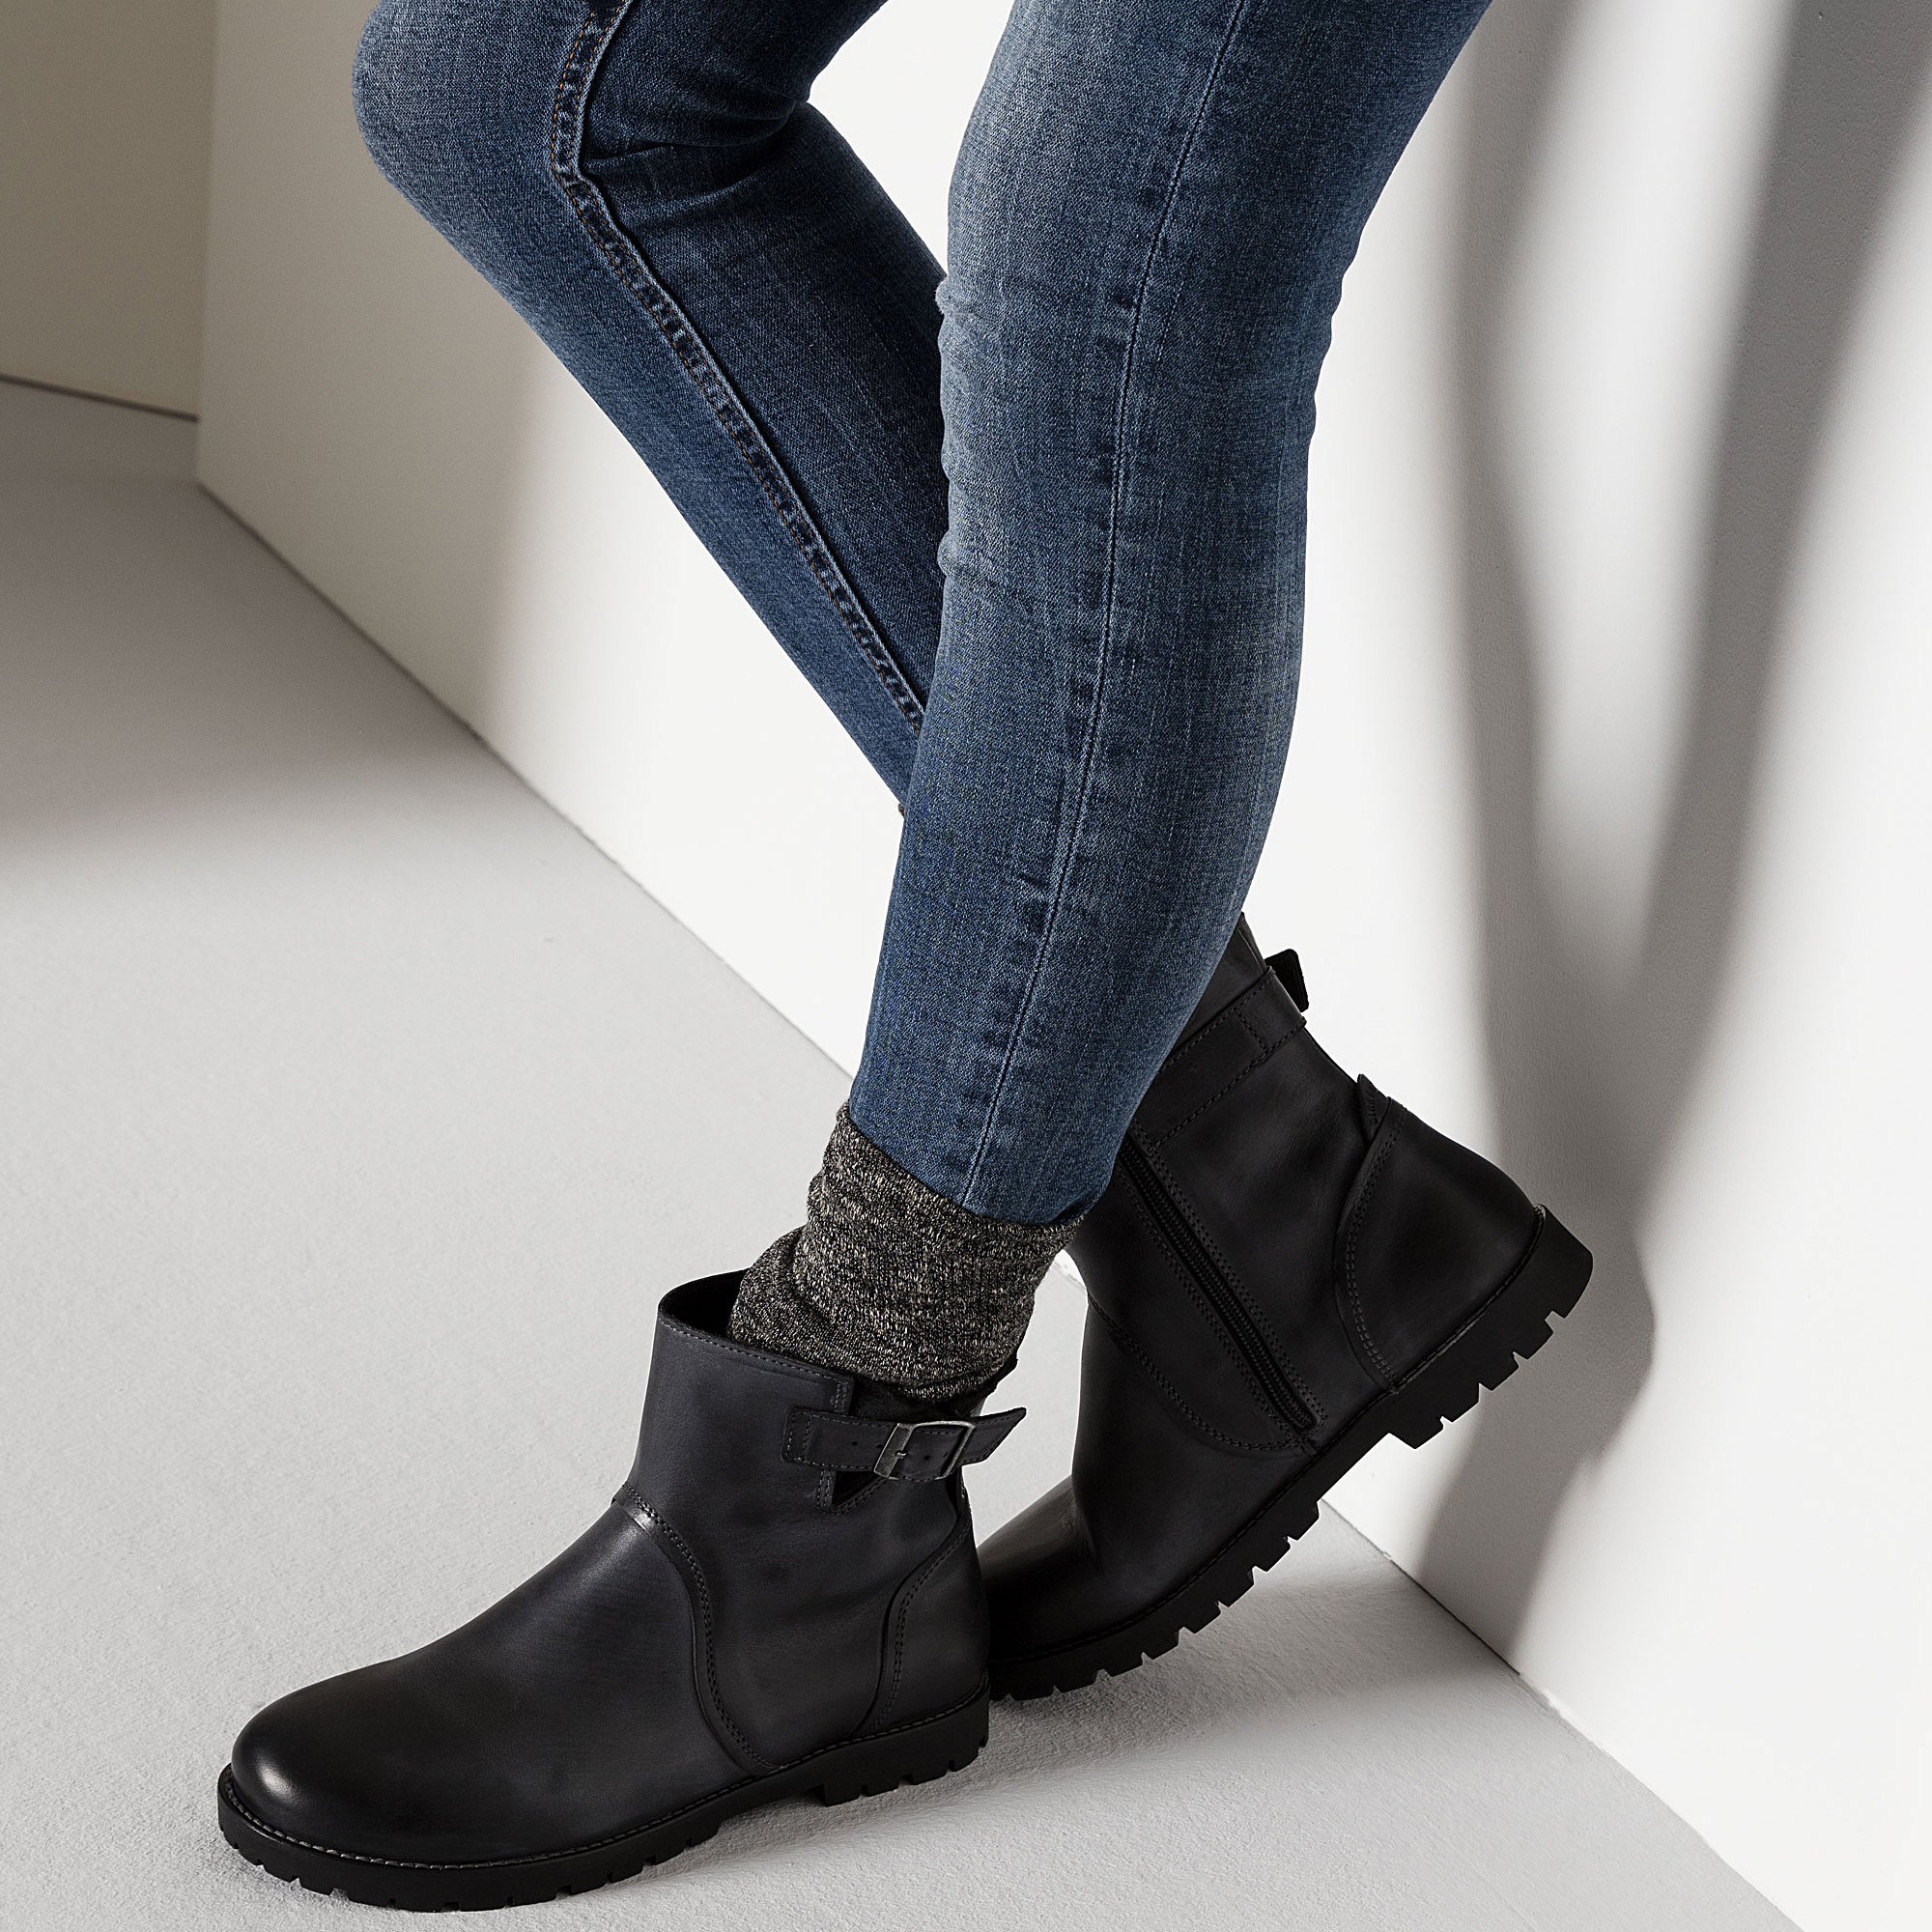 black birkenstock boots